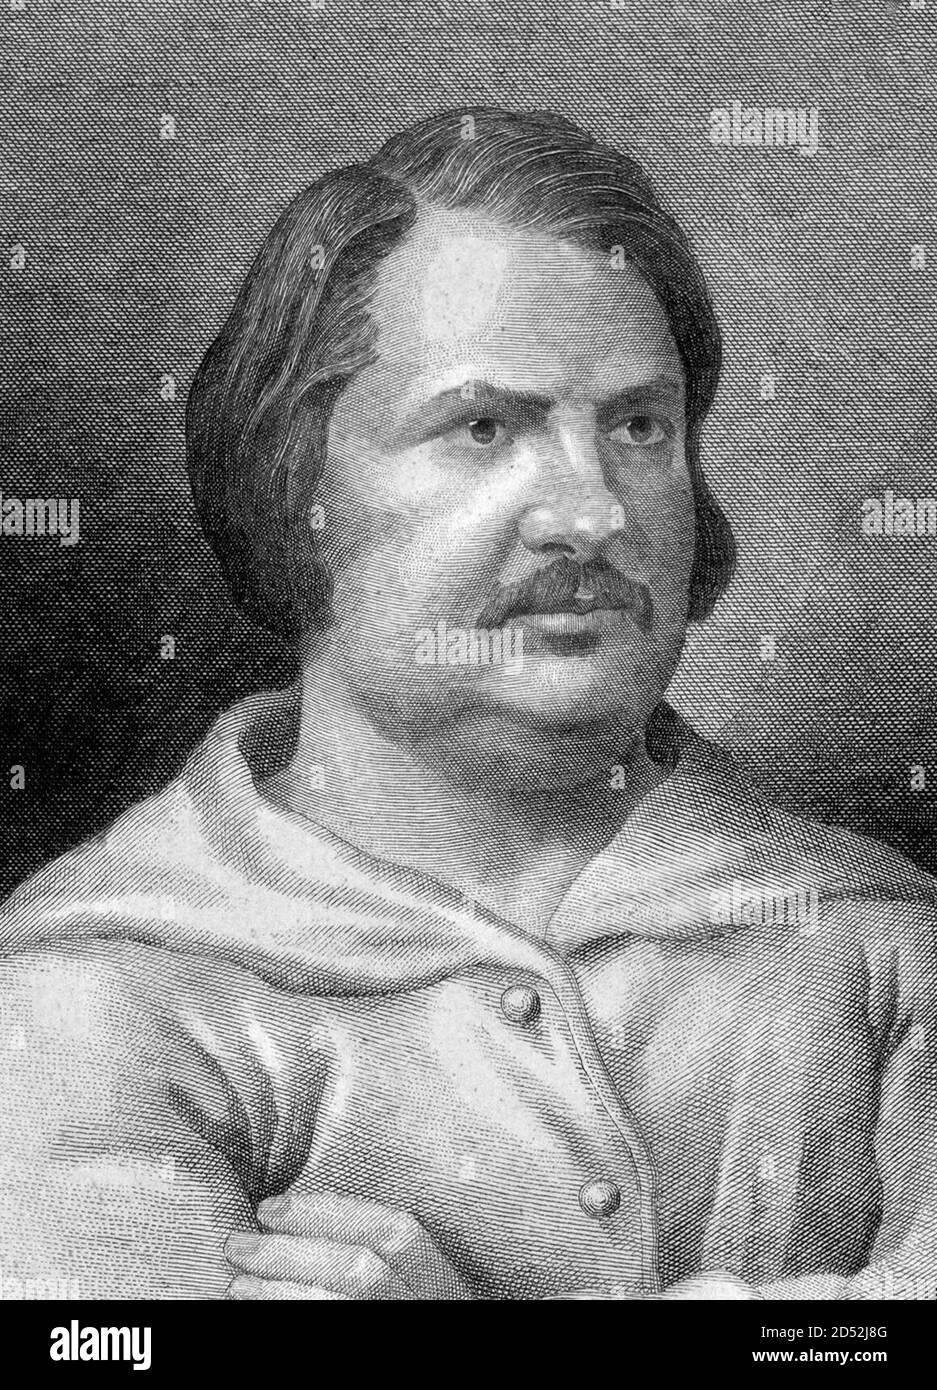 Honoré de Balzac. Ritratto del romanziere francese e drammaturgo, Honoré de Balzac (1799-1850) di Adrien-Jean Nargeot, incisione del 19 ° secolo Foto Stock